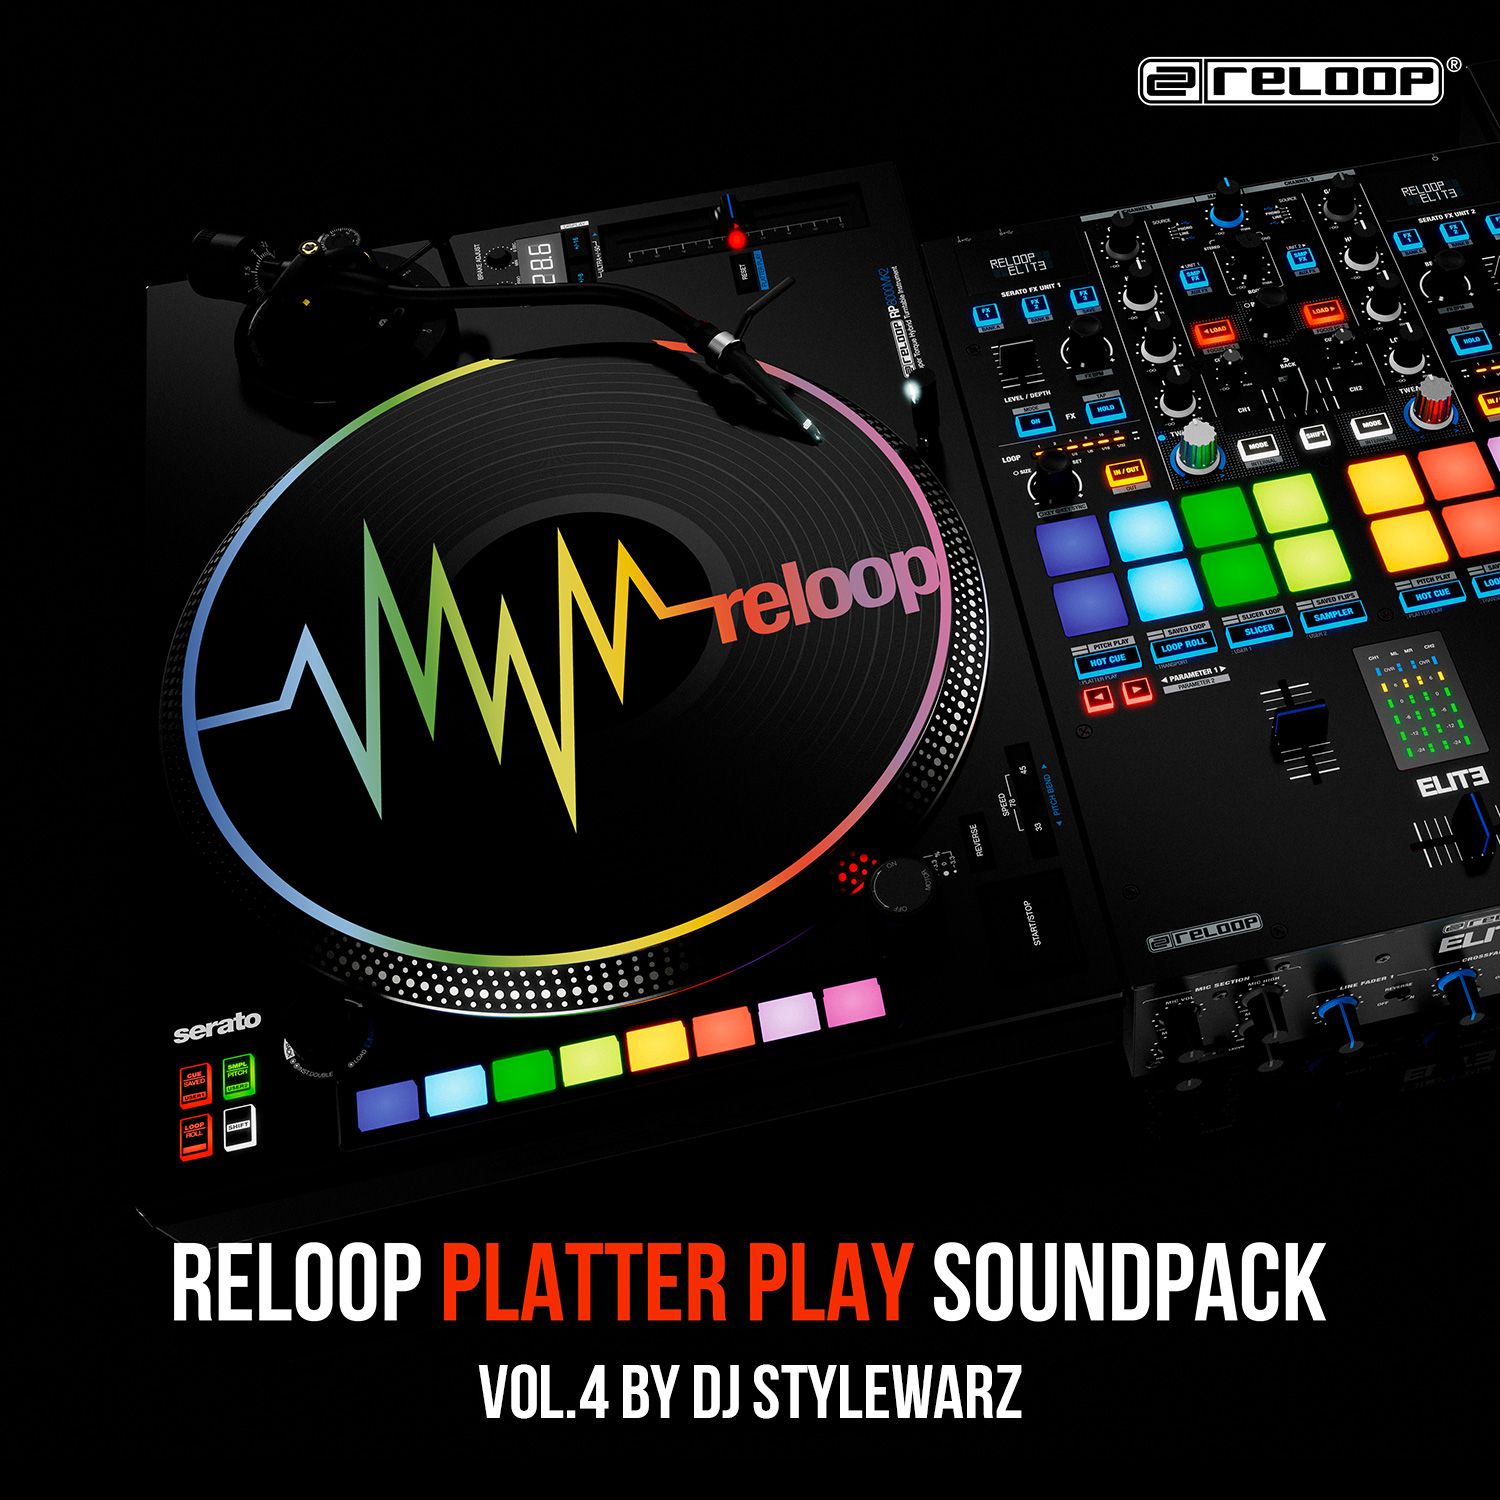 Reloop Platter Play Soundpack  Vol. 4 by DJ STYLEWARZ